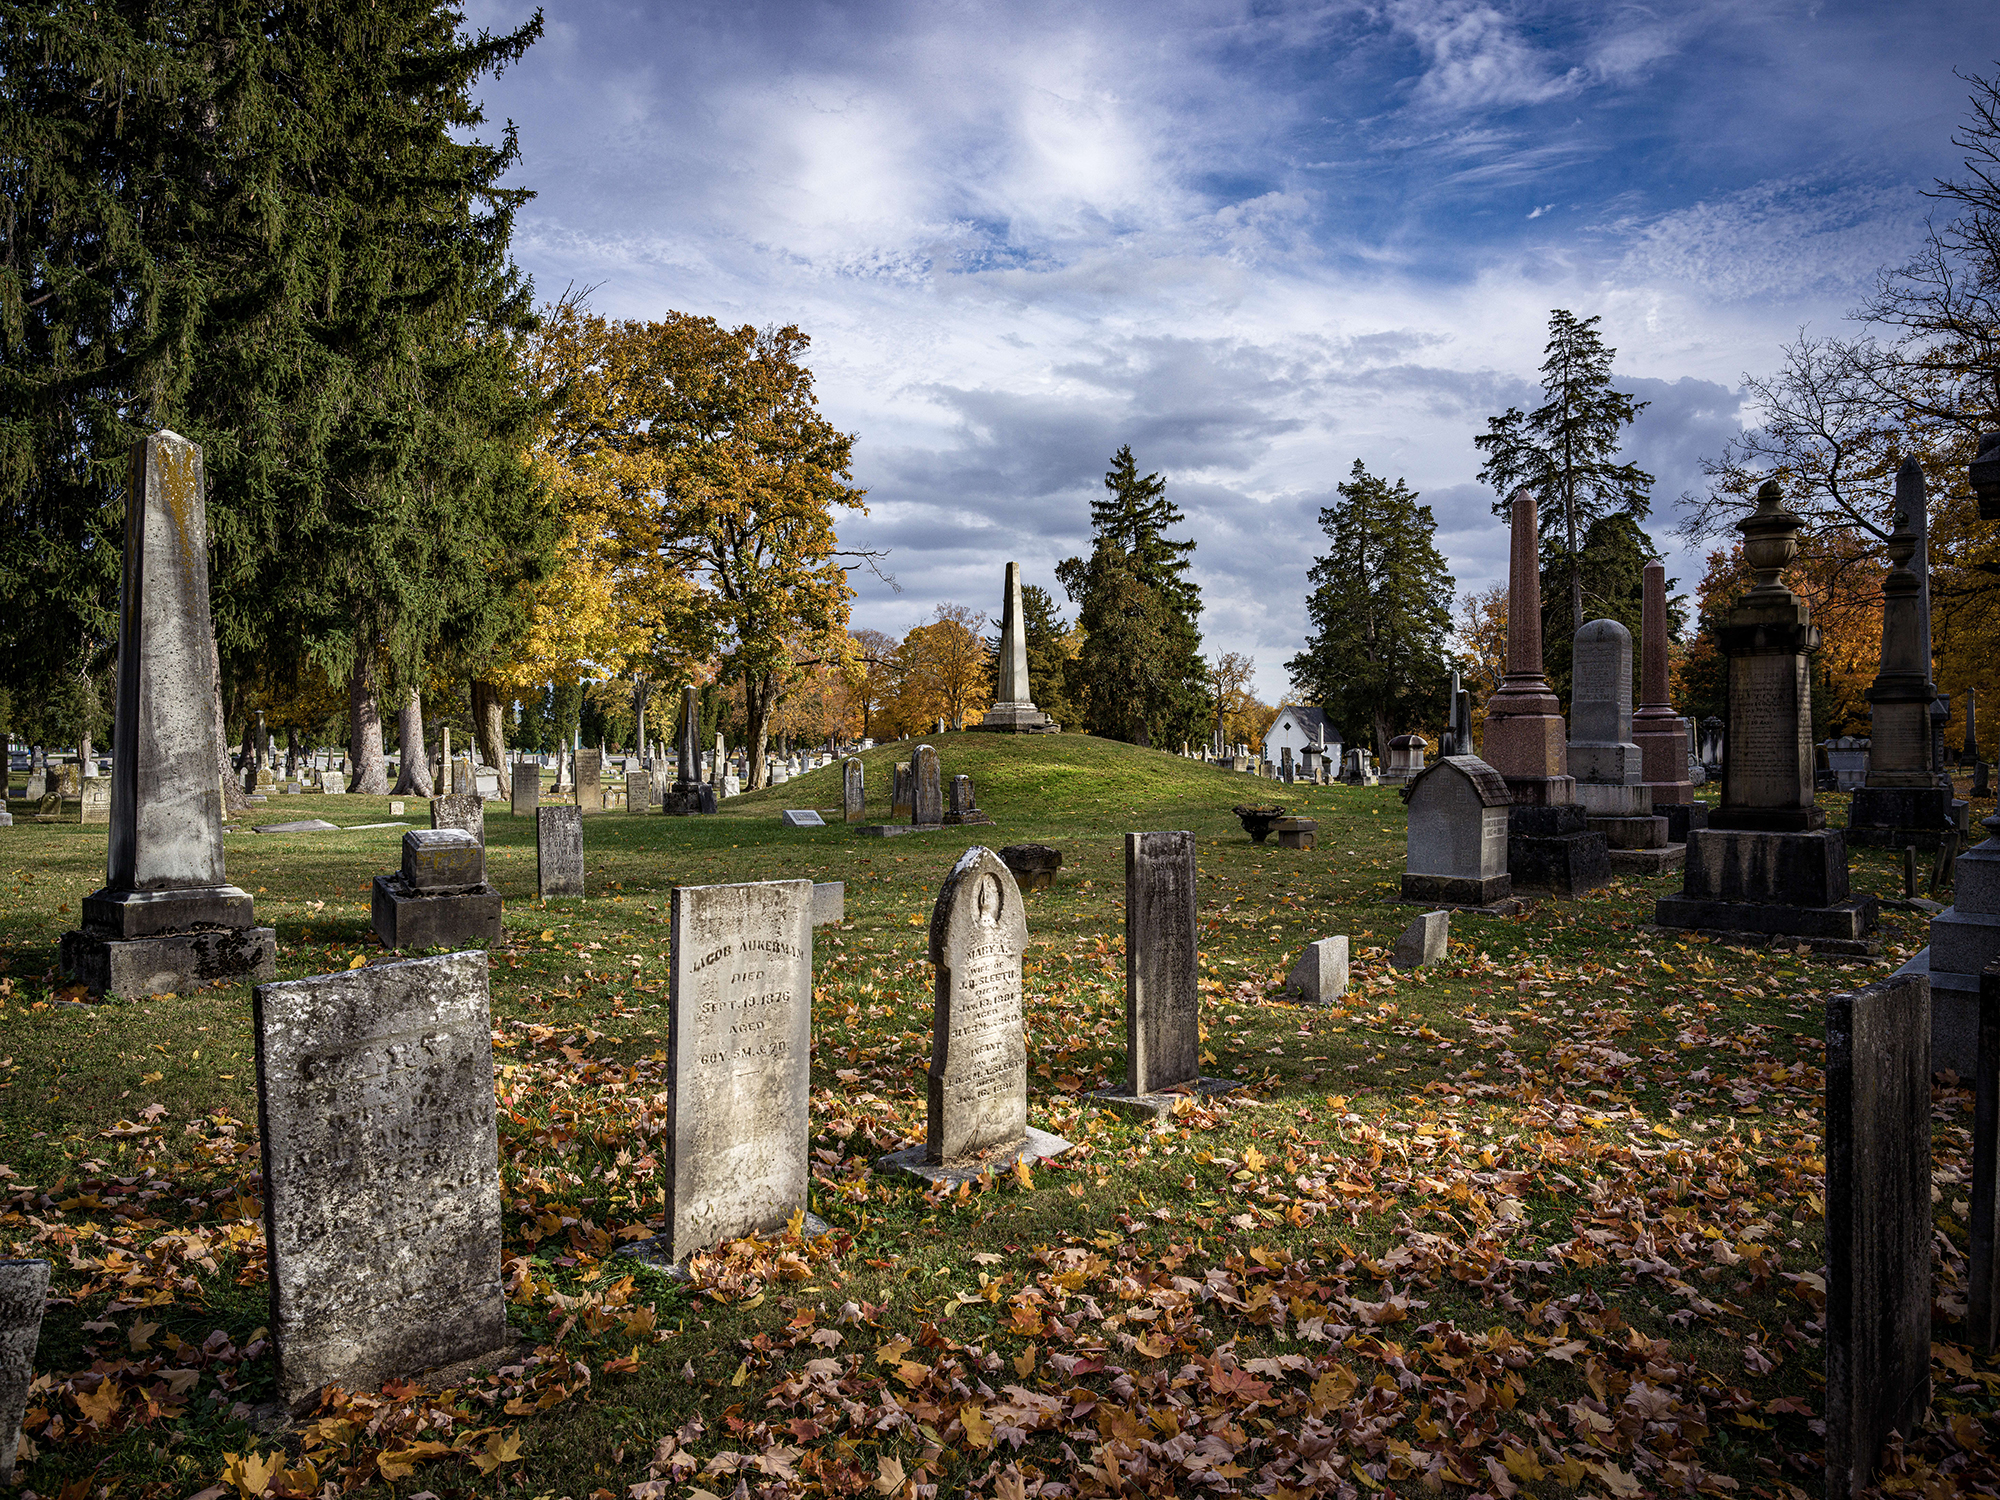 Mound Hill Cemetery, Eaton OH. by Steve Plattner